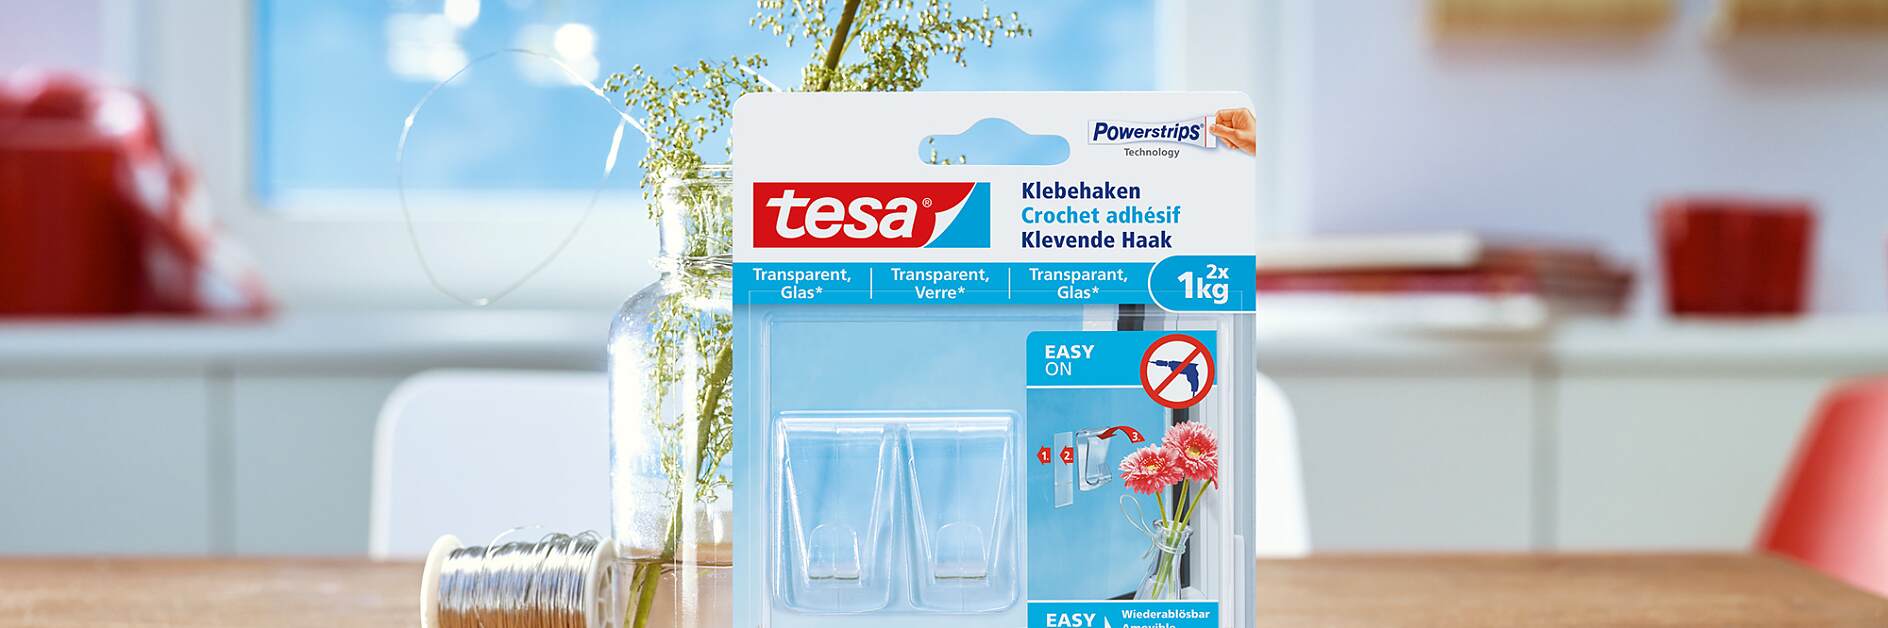 使用tesa®透明玻璃用无痕挂钩（1公斤）的方法。